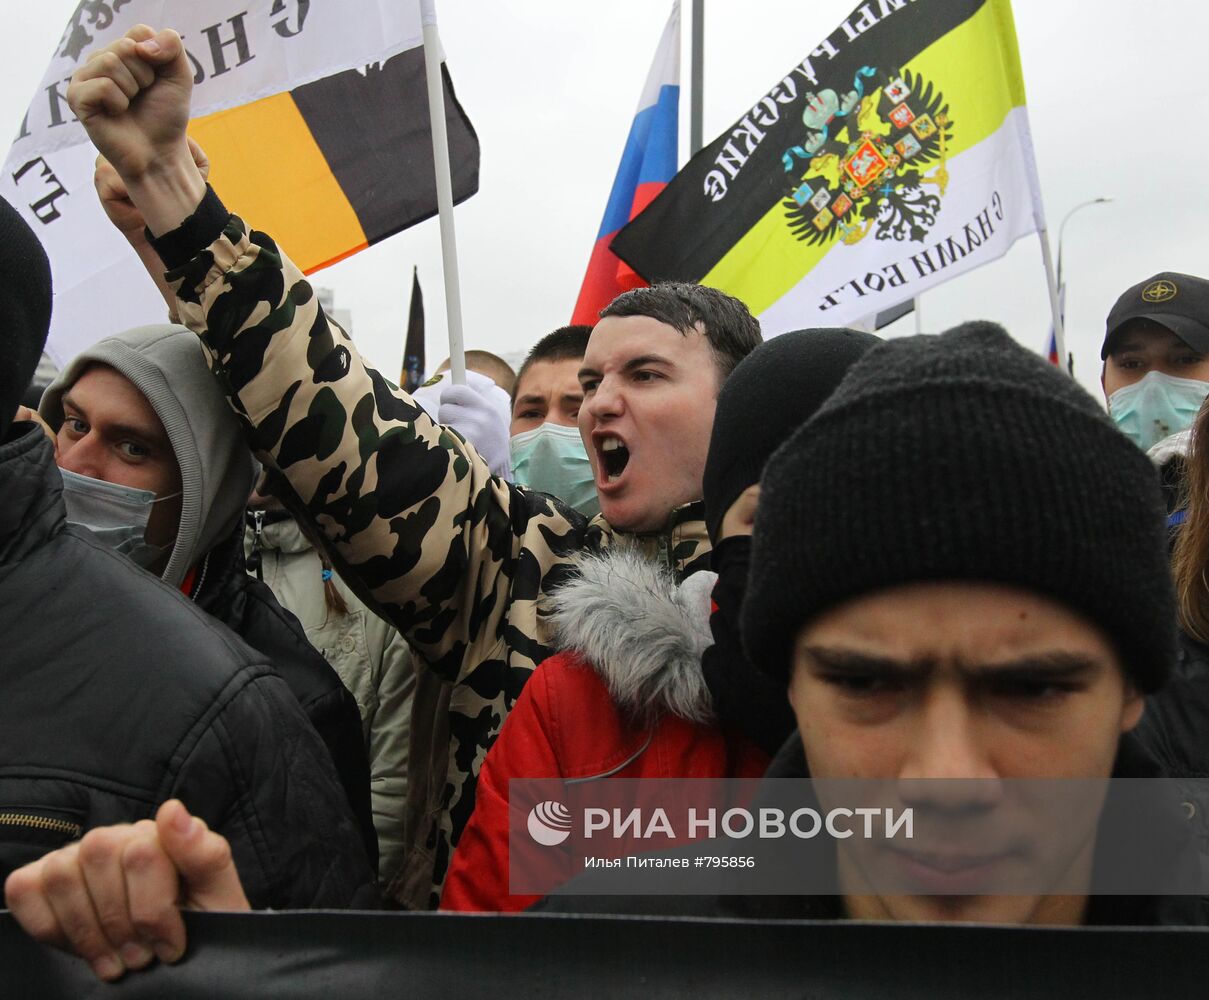 "Русский марш" националистических организаций